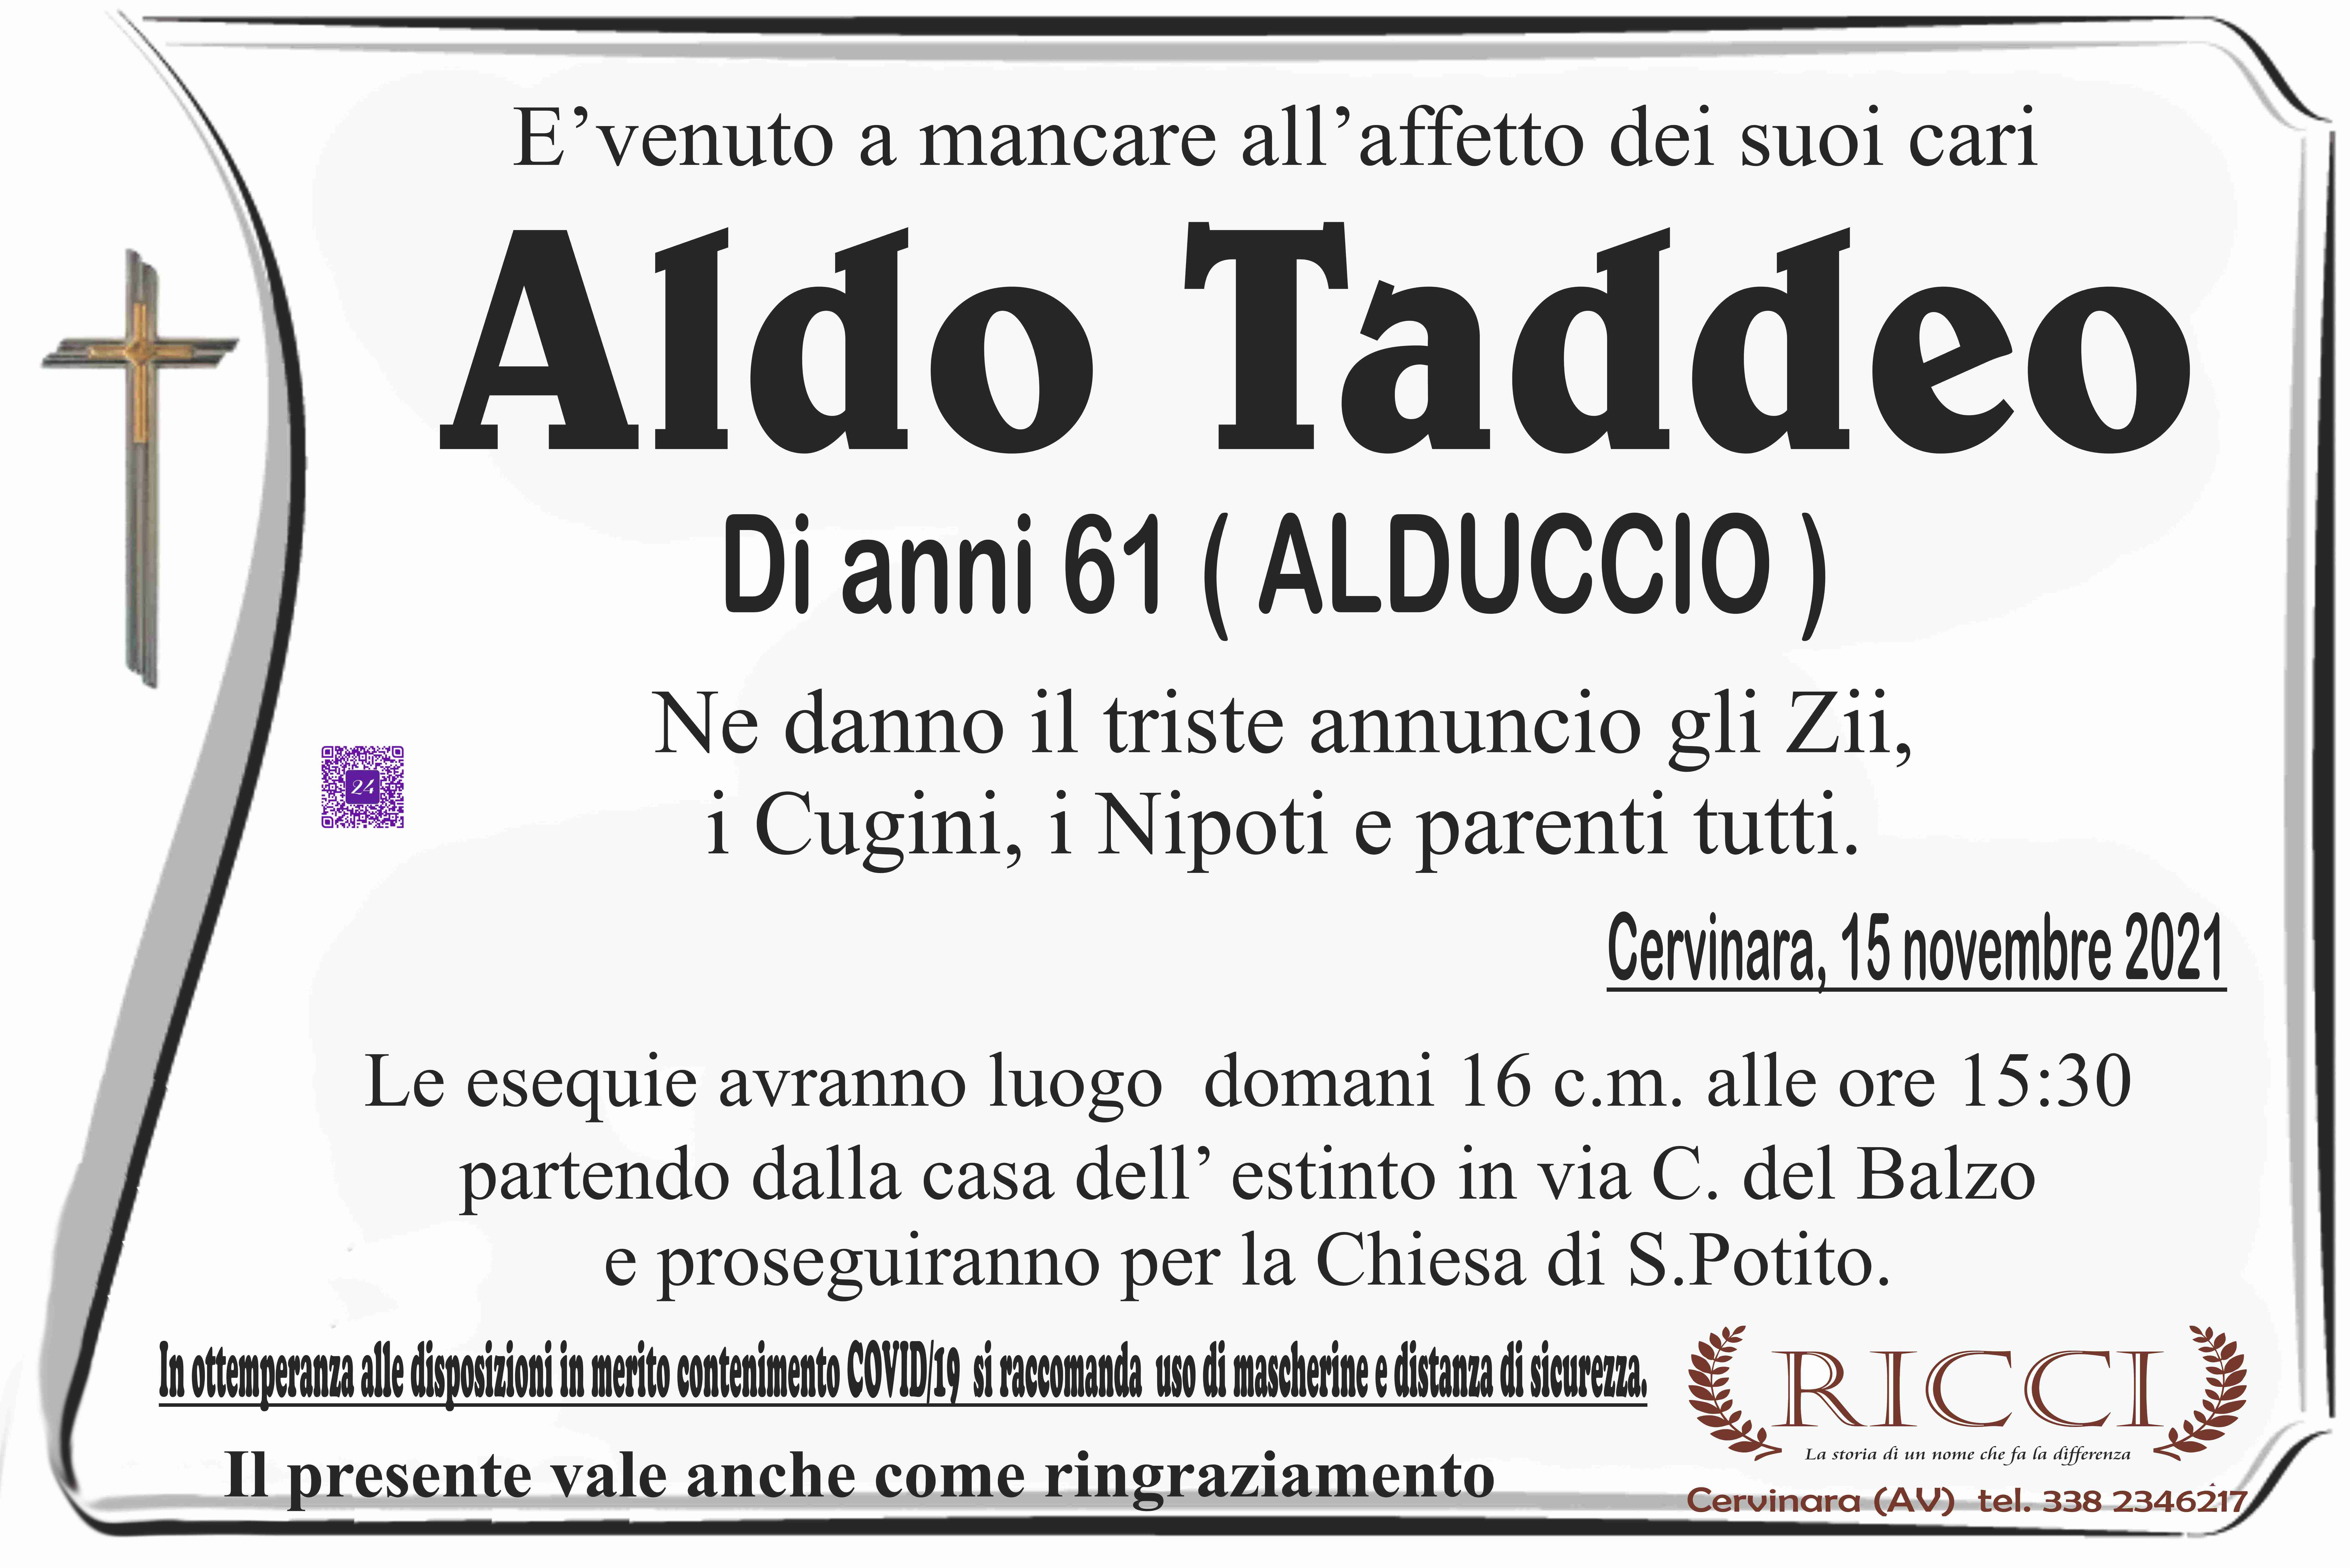 Aldo Taddeo